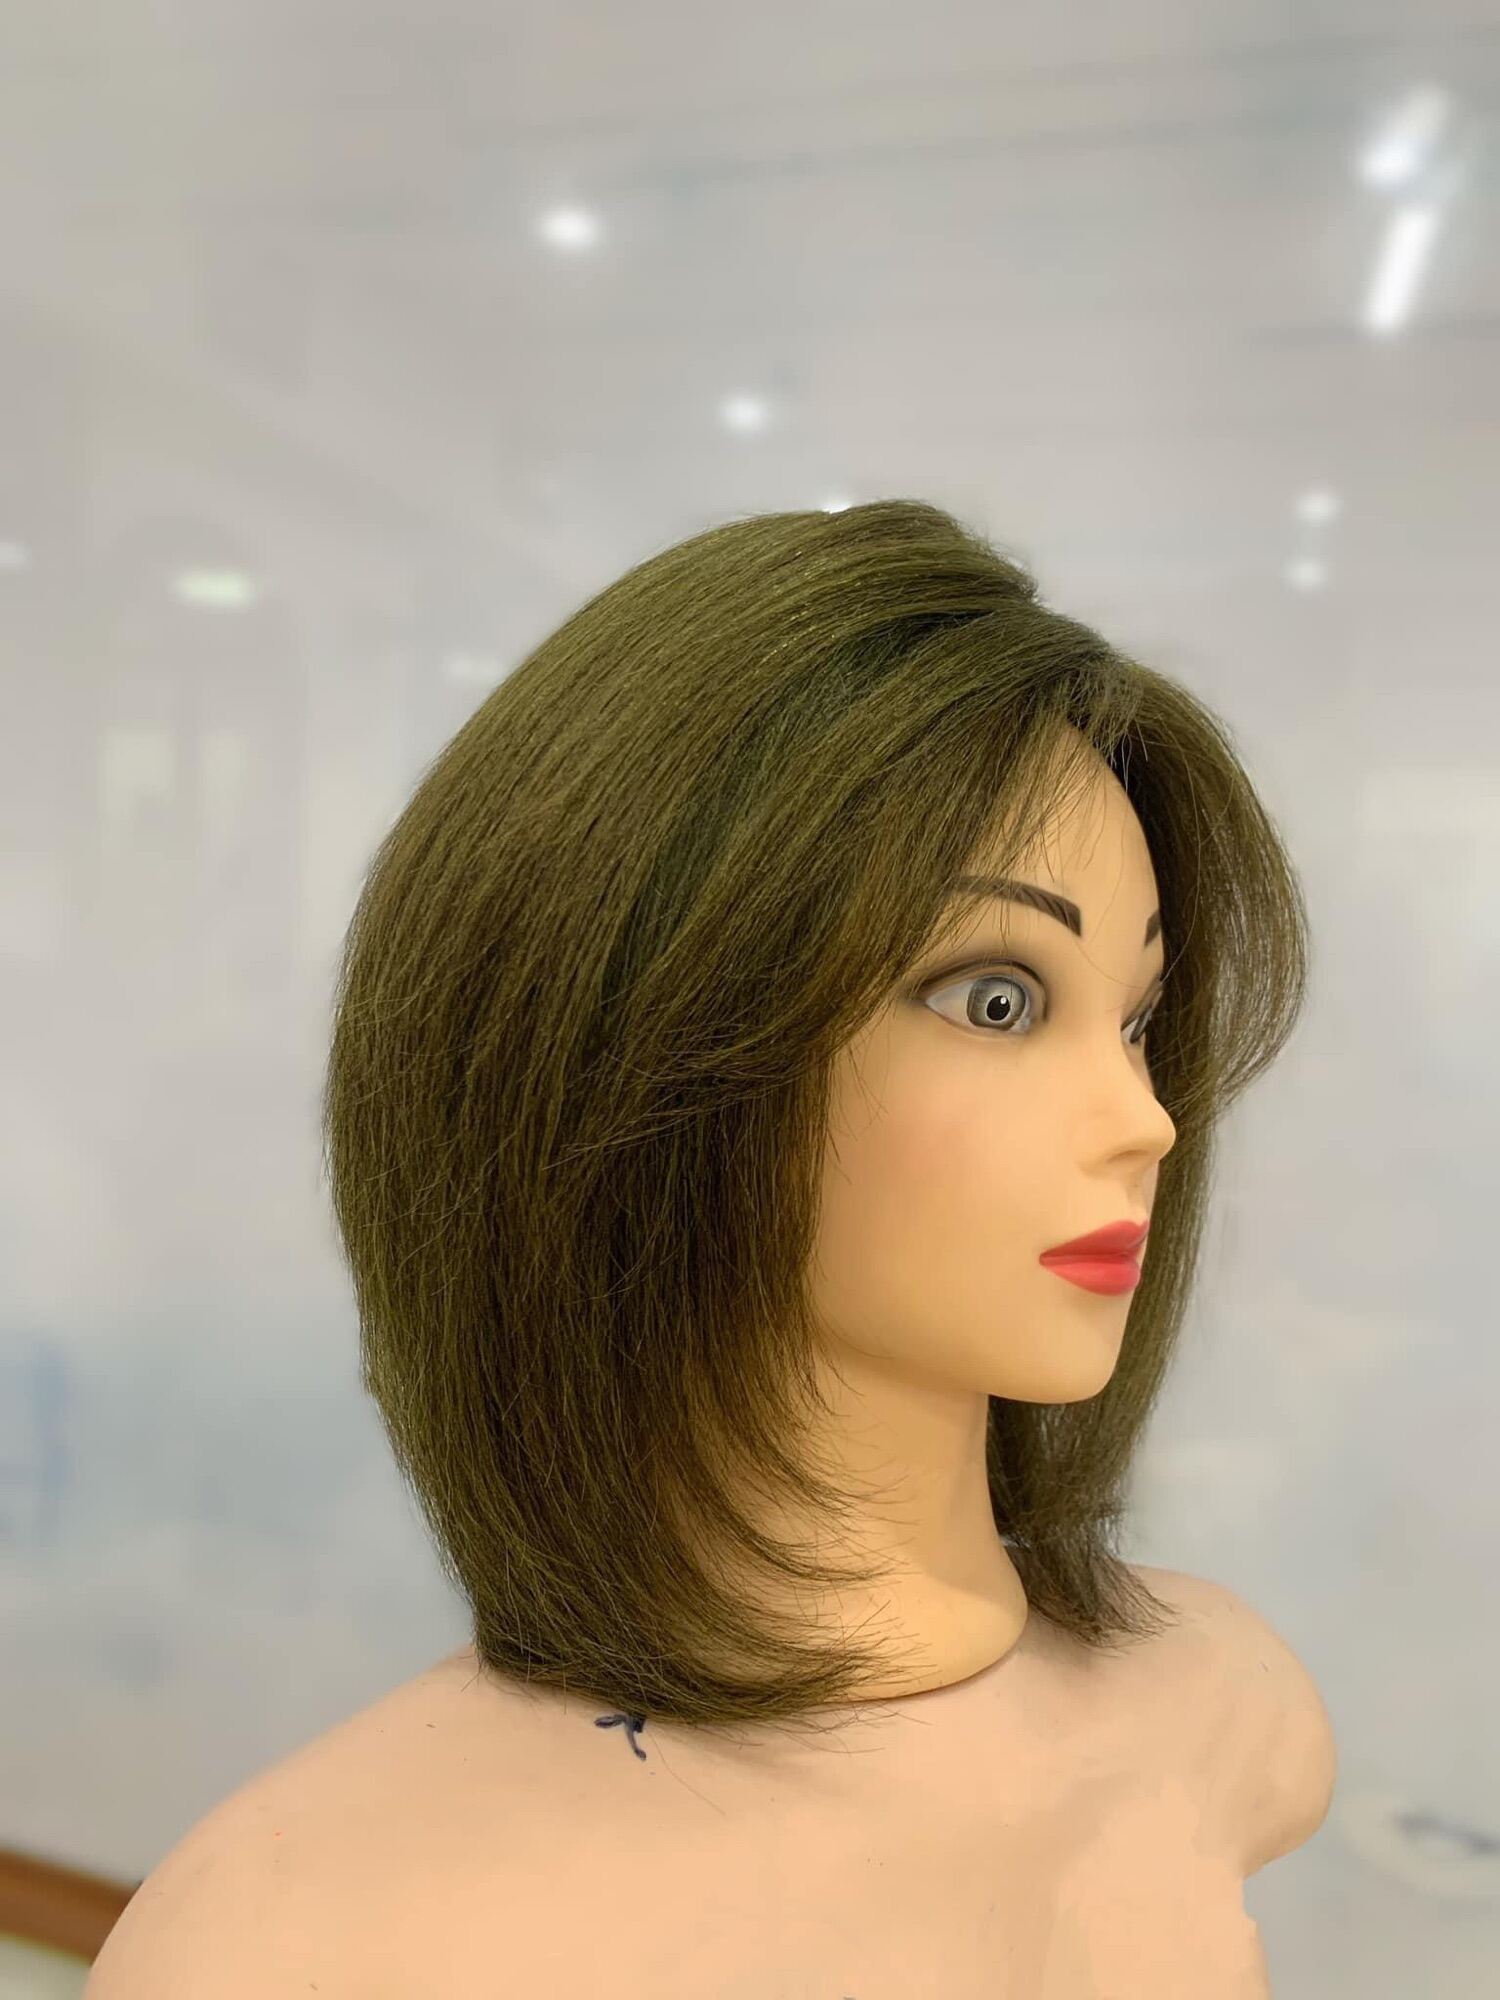 Đầu Mannequin học cắt tóc Manocanh Ma nơ canh  Đồ nghề tóc chuyên nghiệp   0983258655  YouTube